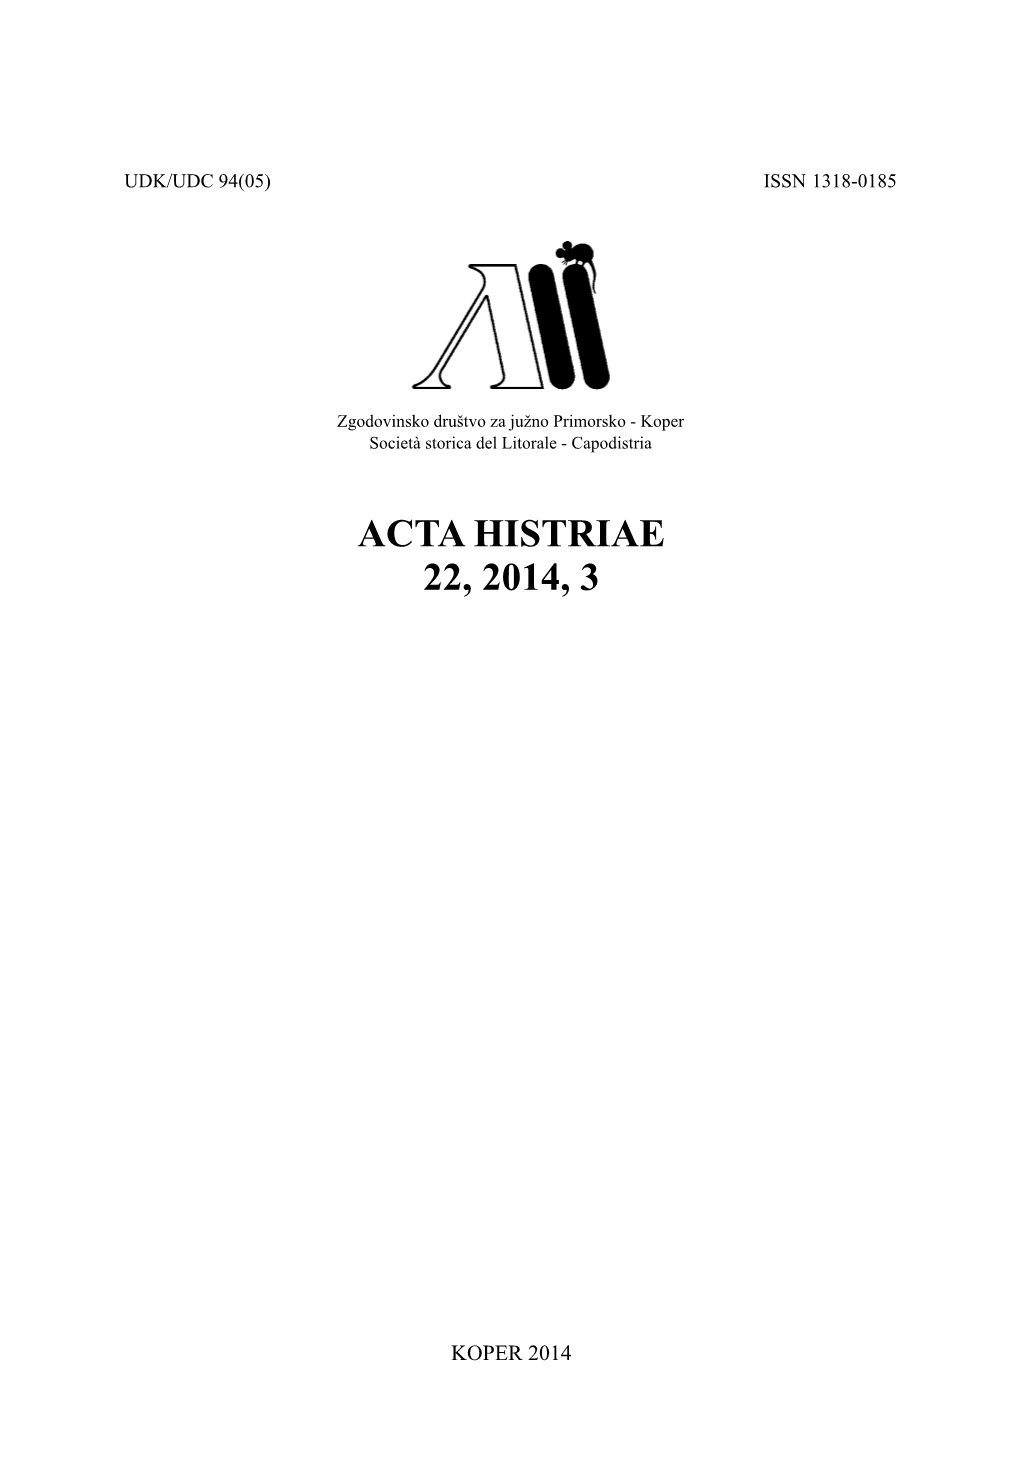 Acta Histriae 22, 2014, 3